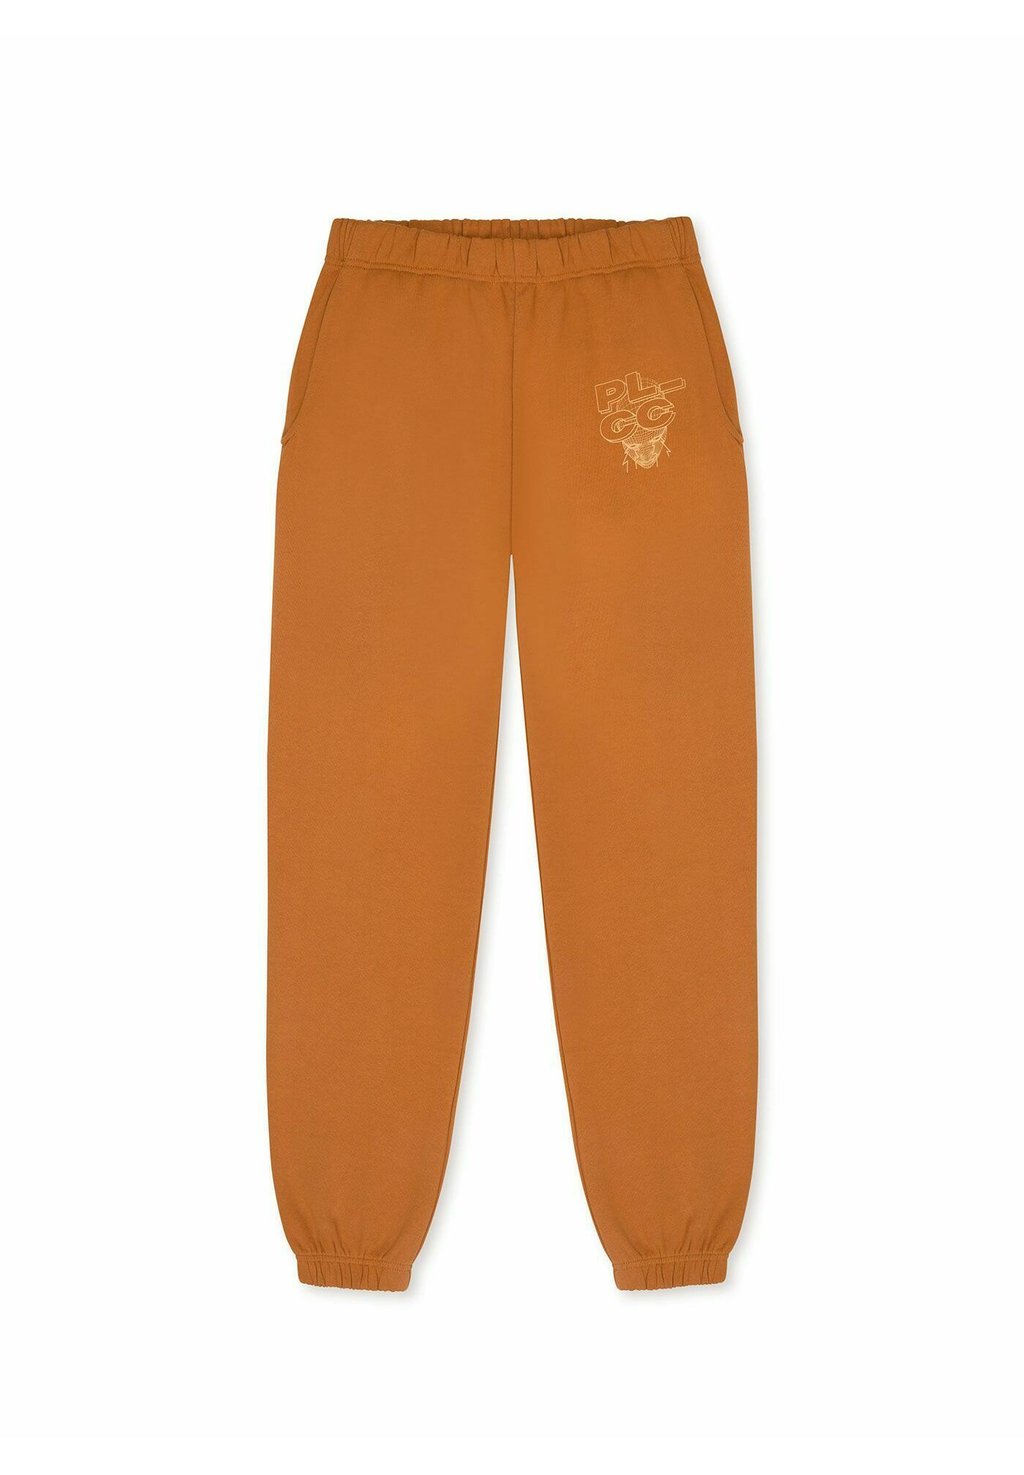 Тренировочные брюки Pako Lorente, оранжевый